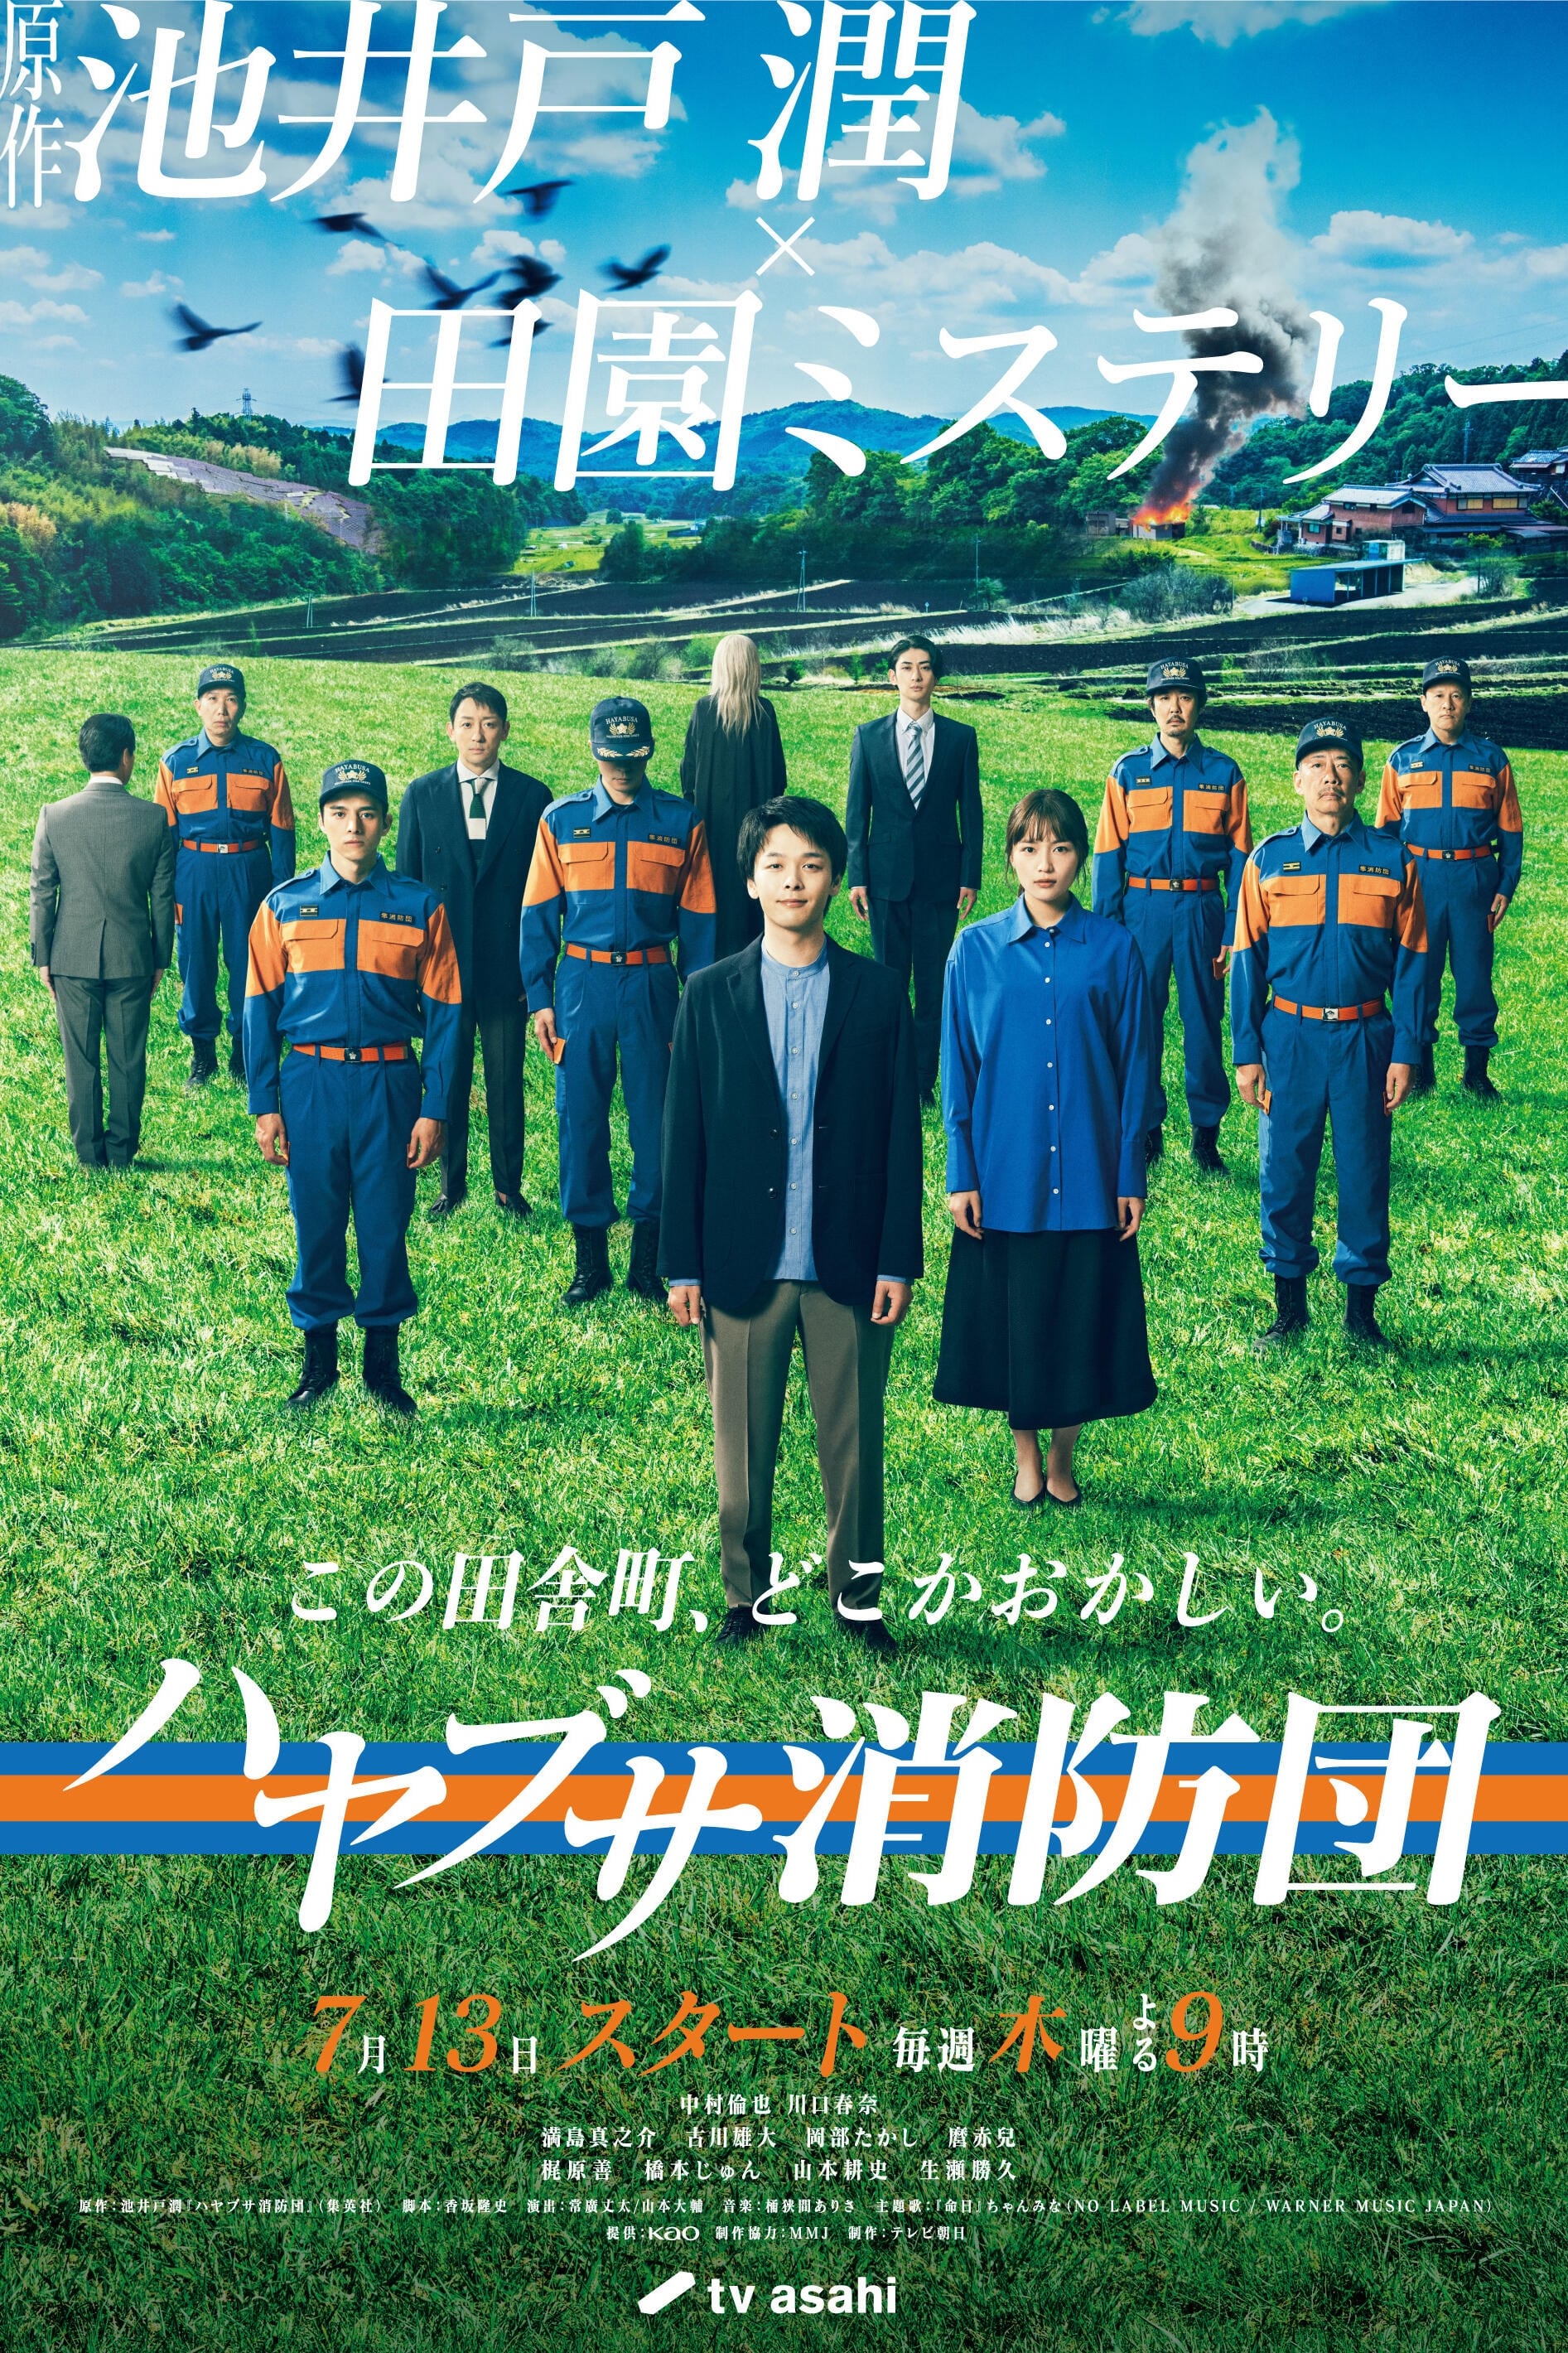 TV ratings for Hayabusa Shobodan (ハヤブサ消防団) in Norway. TV Asahi TV series